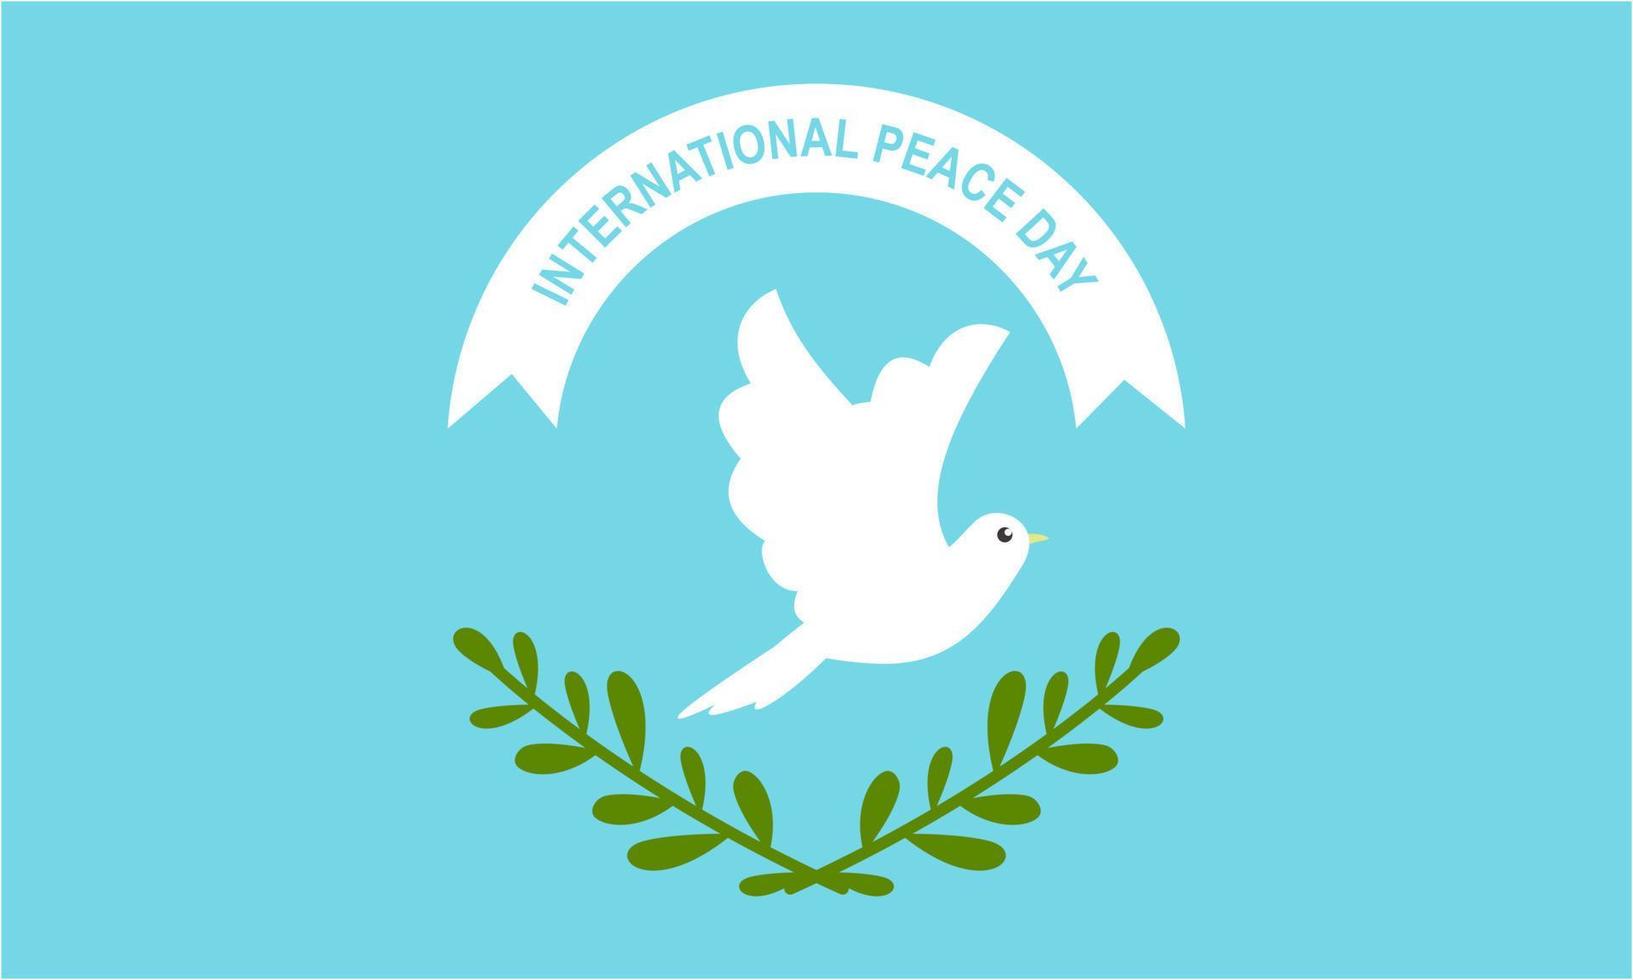 diseño plano del concepto del día internacional de la paz vector